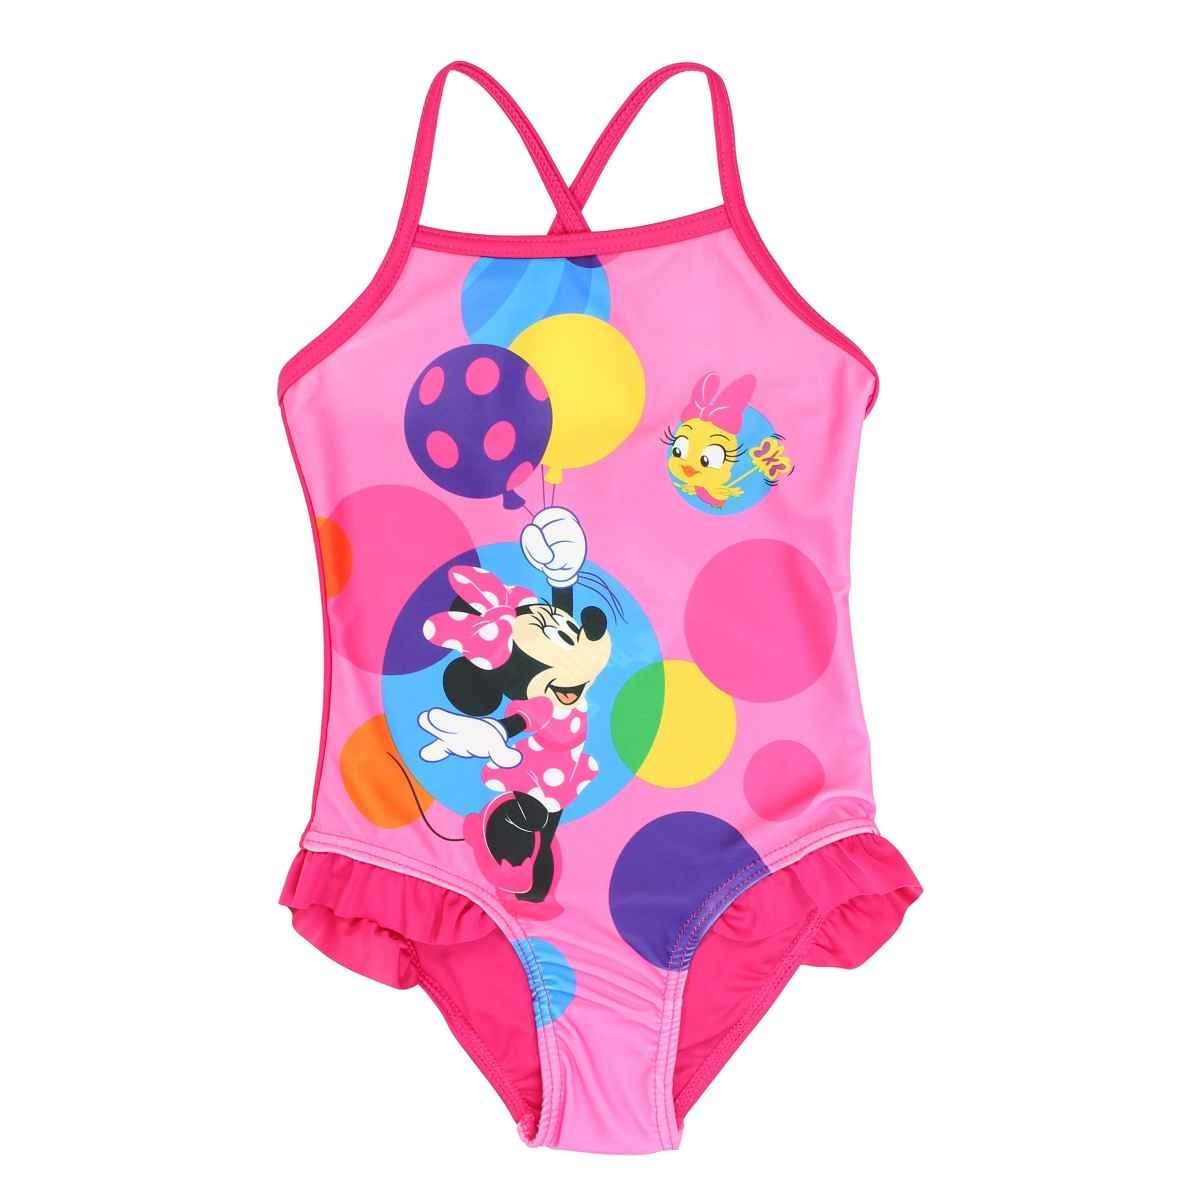 98 Maus Disney bis 128 Badeanzug Kinder Mädchen Disney Minnie Bademode Badeanzug Gr.